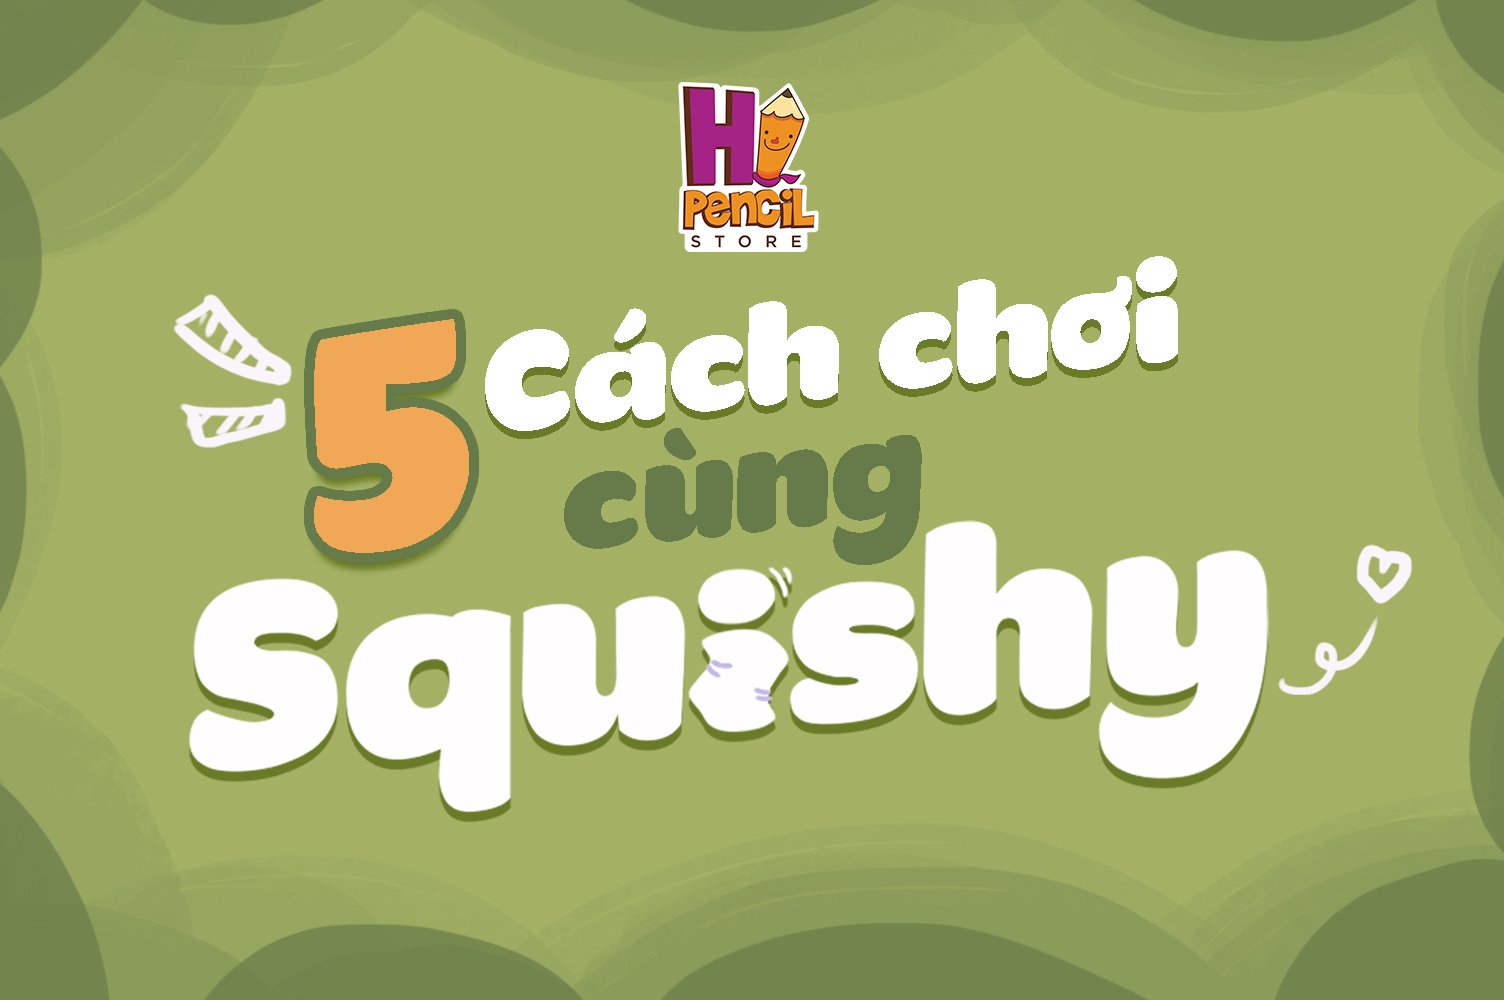 5 Cách Chơi Với Squishy Hi Pencil